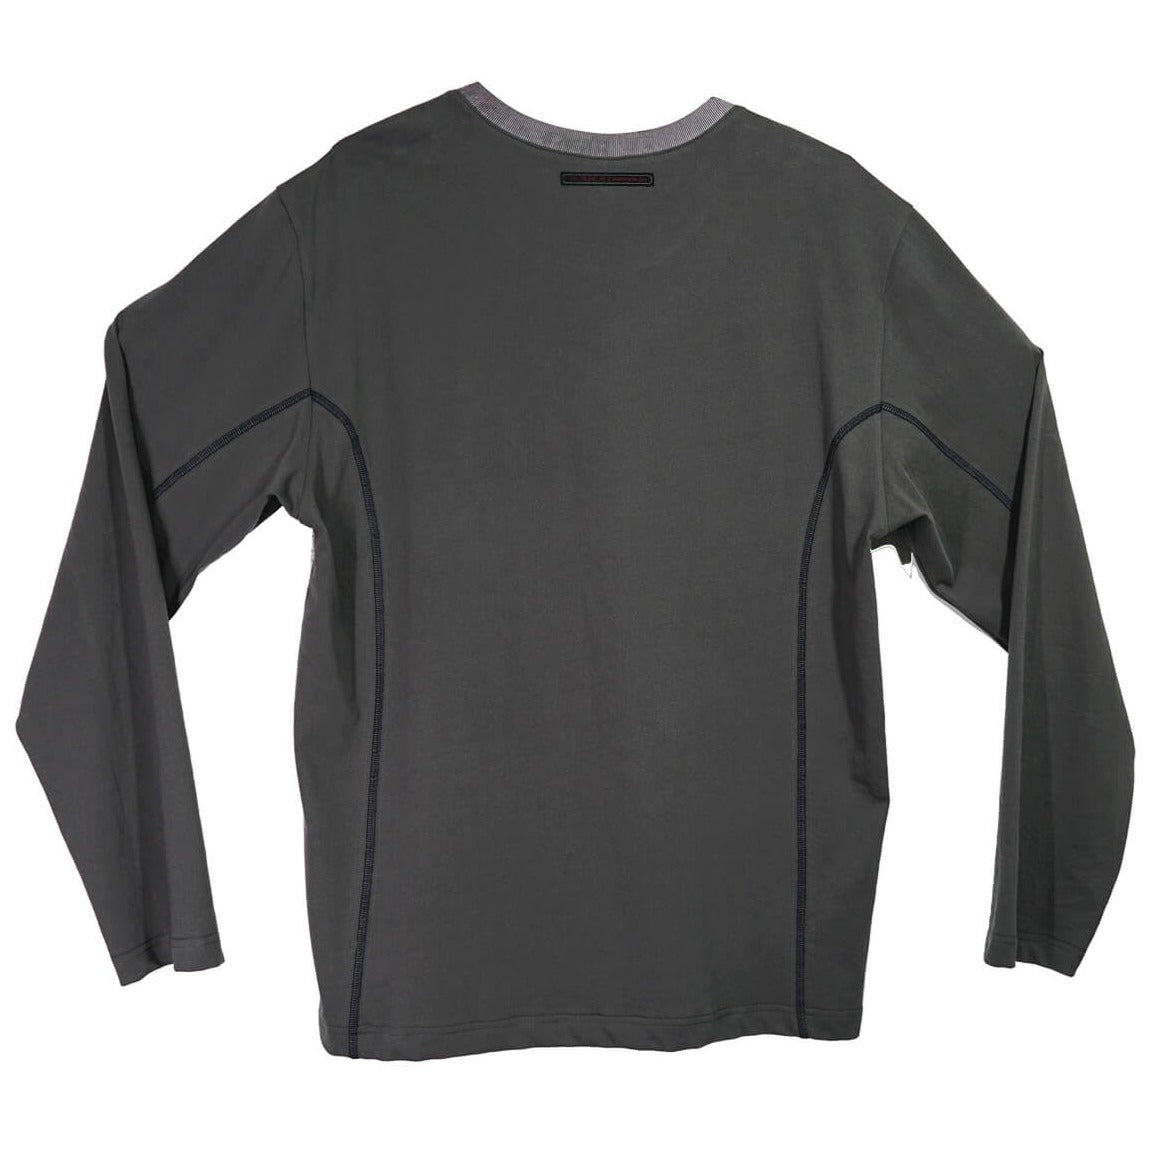 Skate Grunge Print Oversized Long Sleeve Gray Unisex Shirt